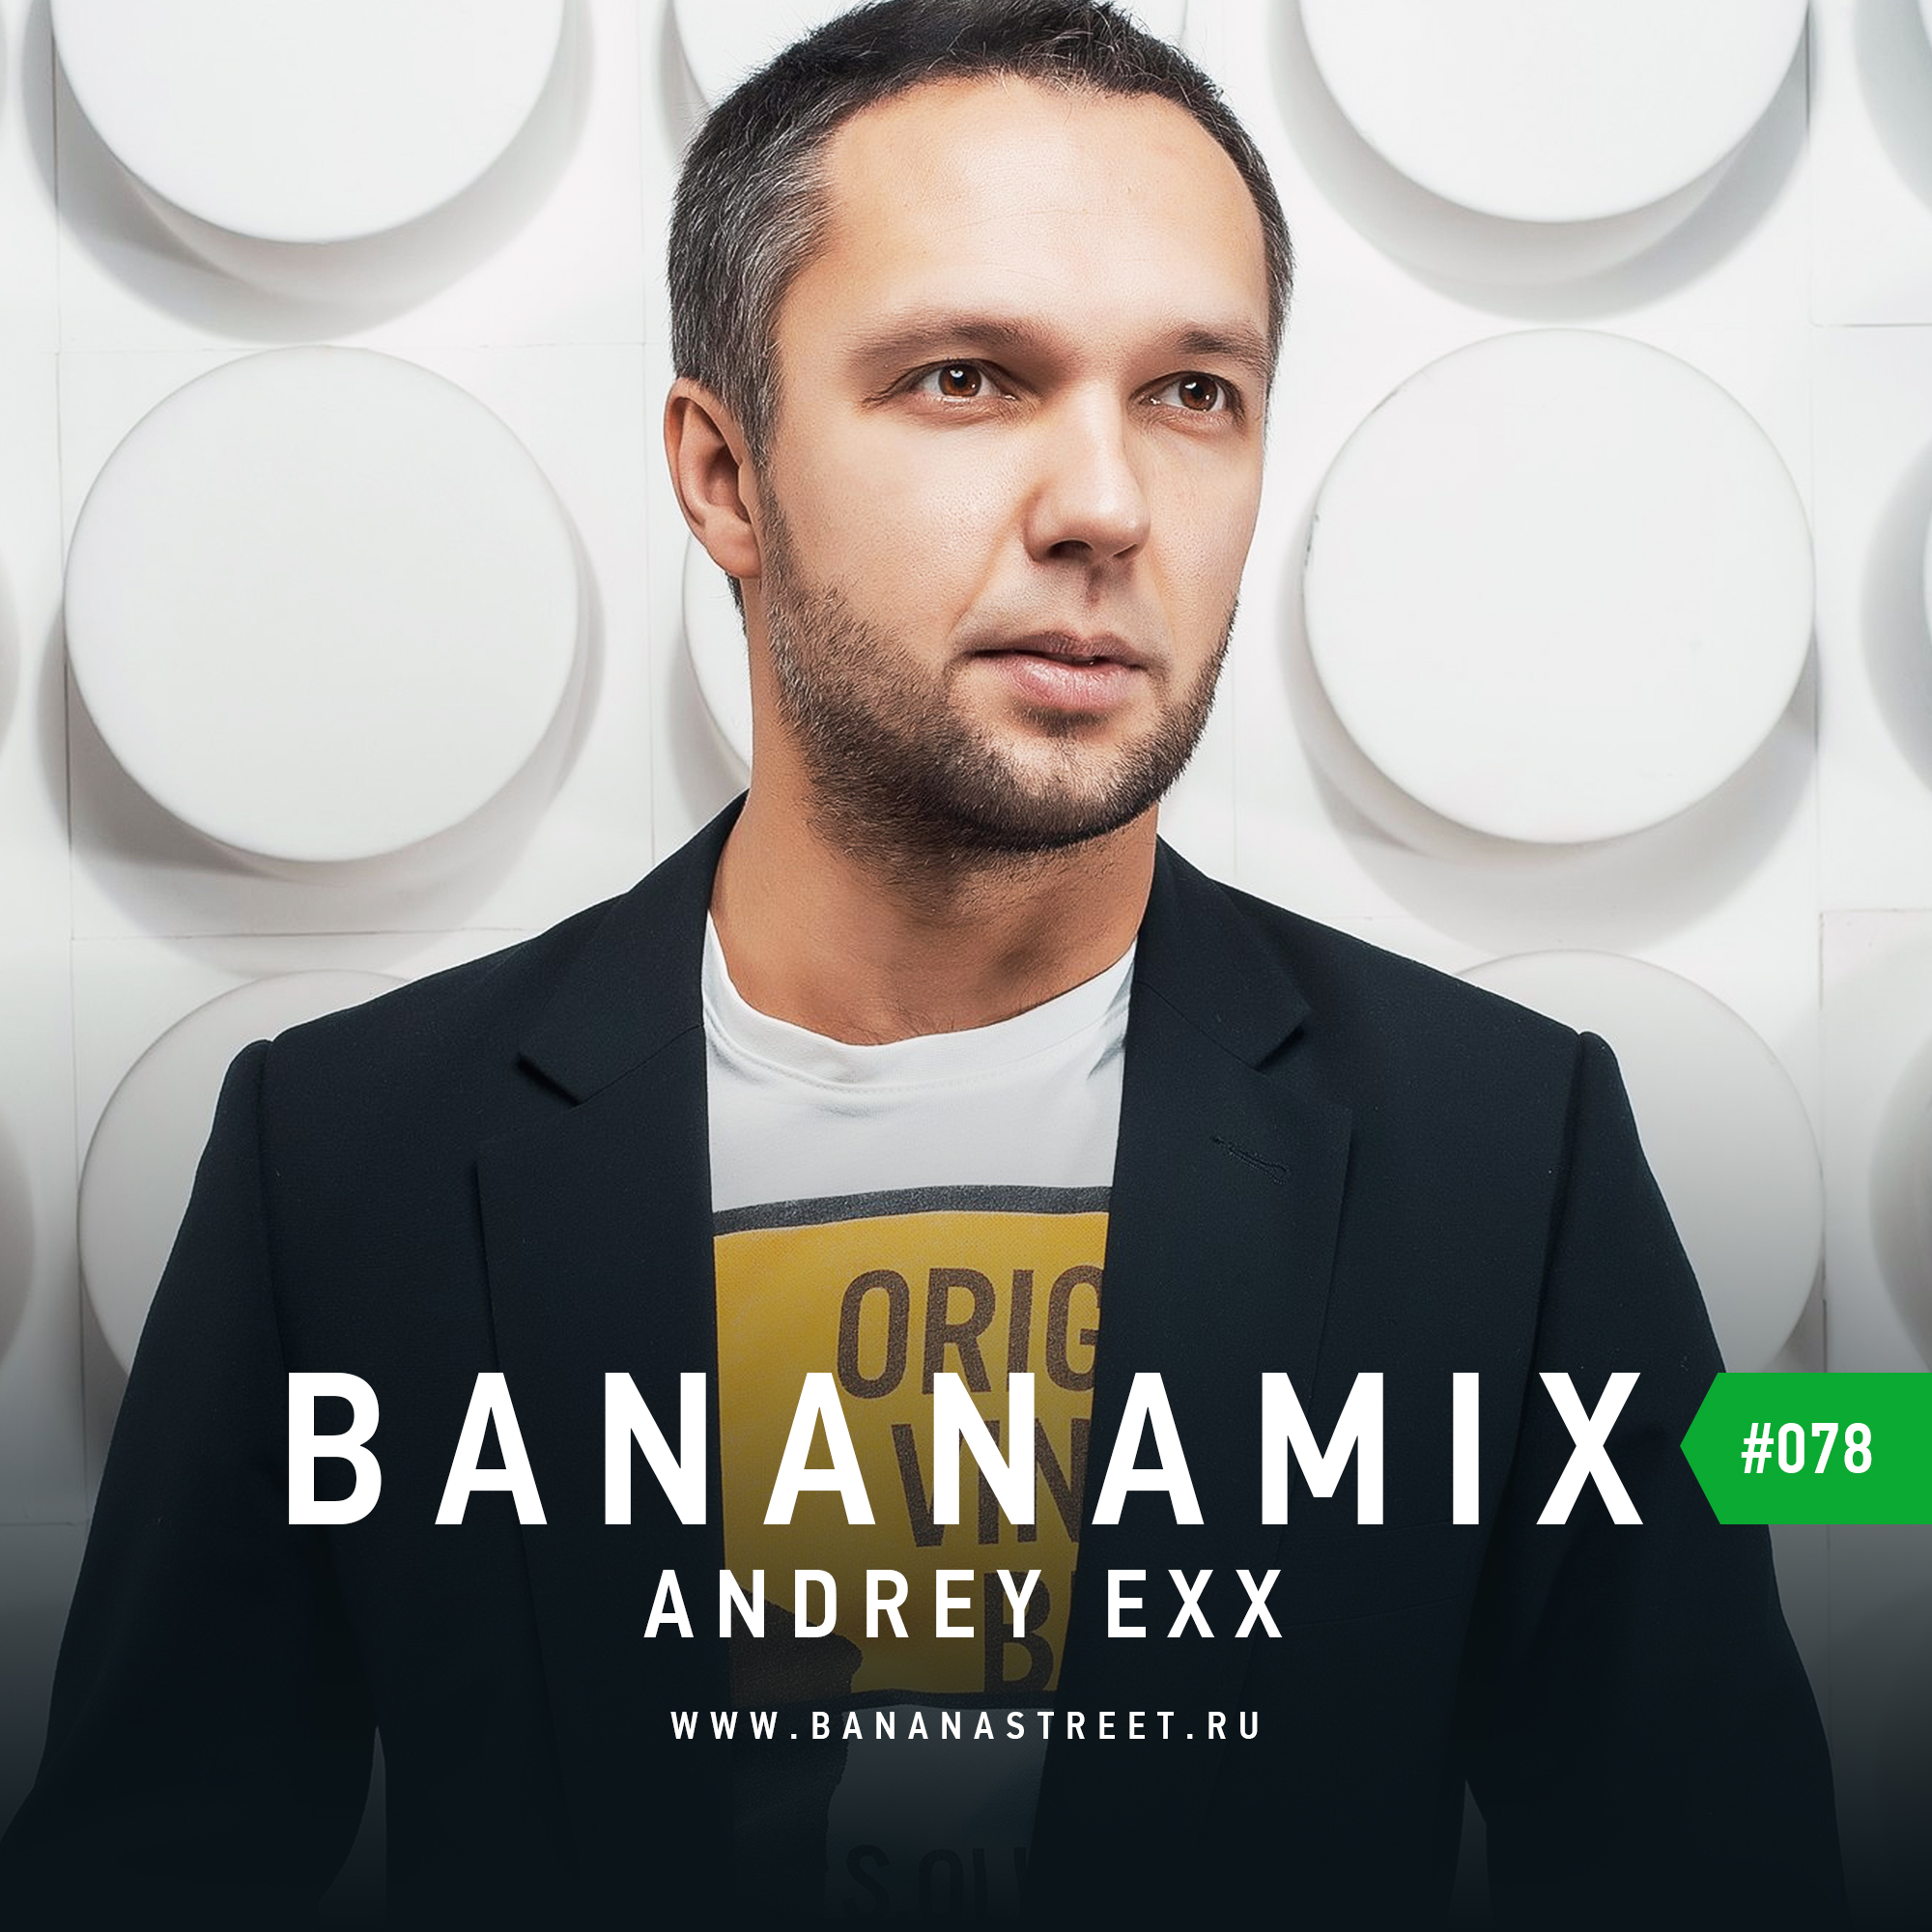 Бананастрит радио. Andrey Exx. БАНАНАМИКС. "Andrey Exx" && ( исполнитель | группа | музыка | Music | Band | artist ) && (фото | photo). Bananastreet.